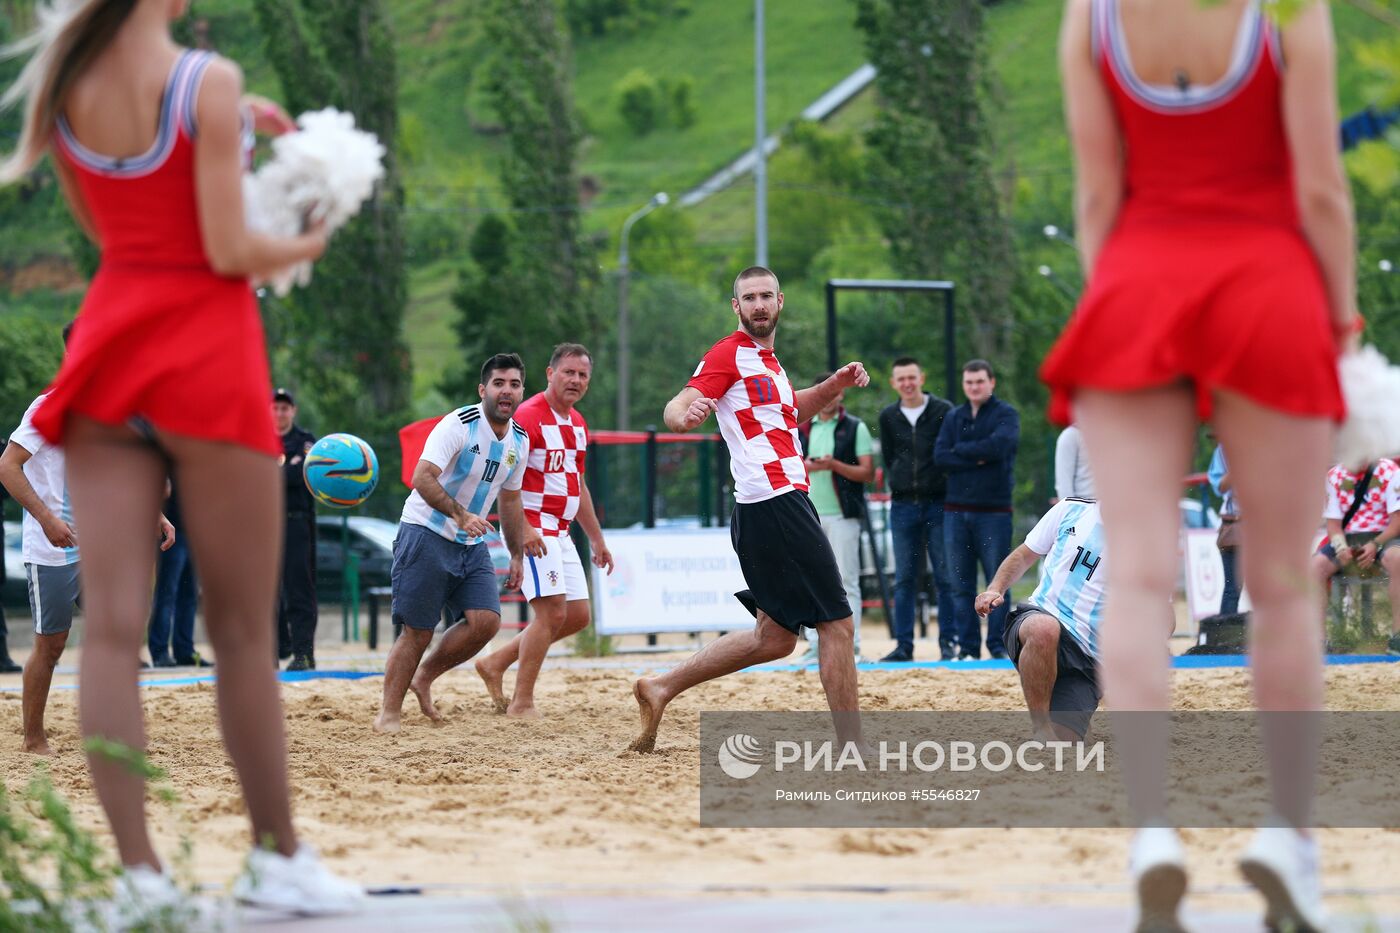 Товарищеский матч по пляжному футболу между болельщиками Аргентины и Хорватии